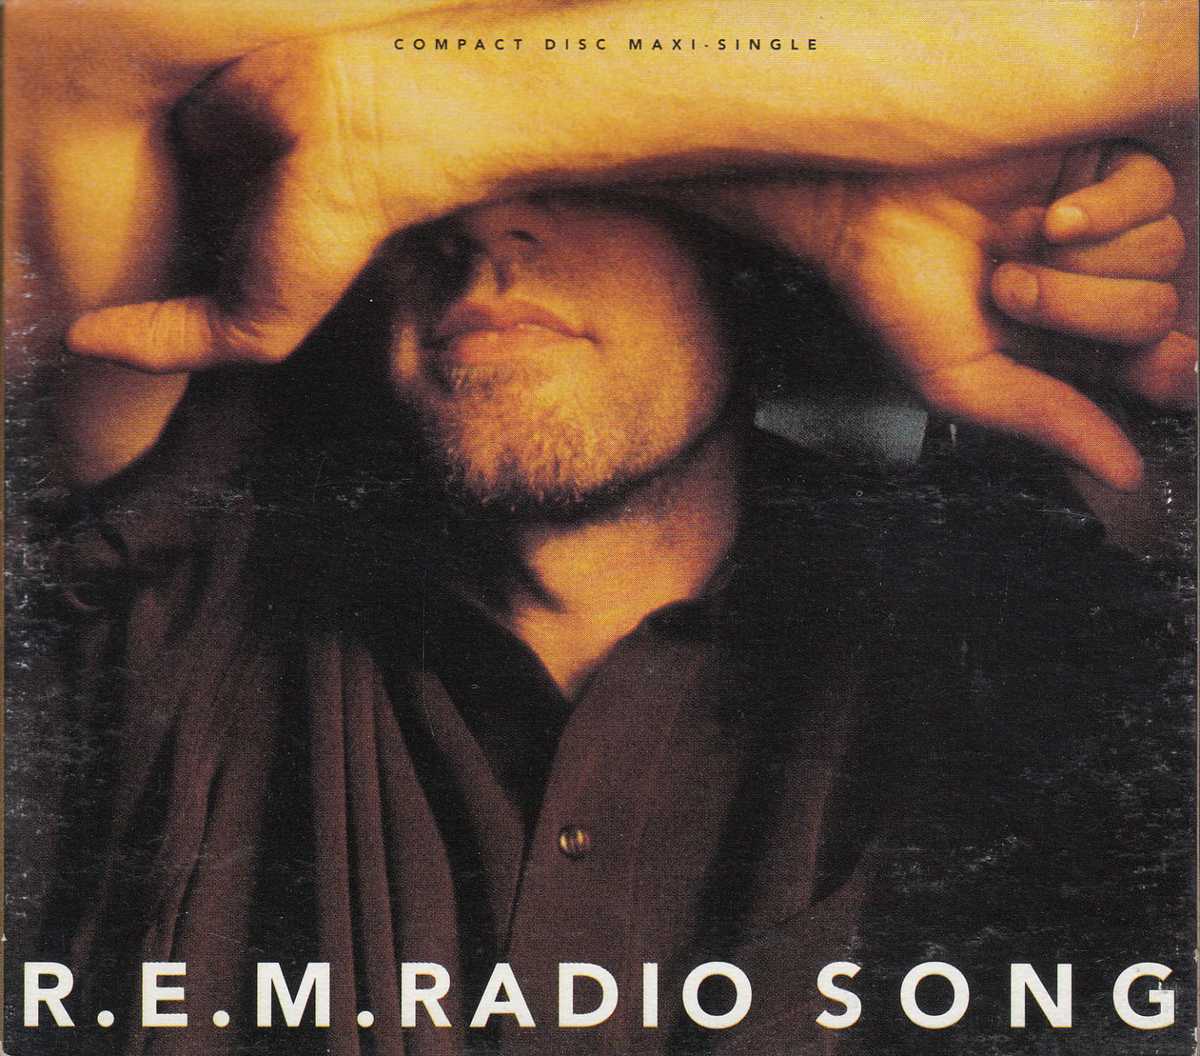 R.E.M. - Radio song